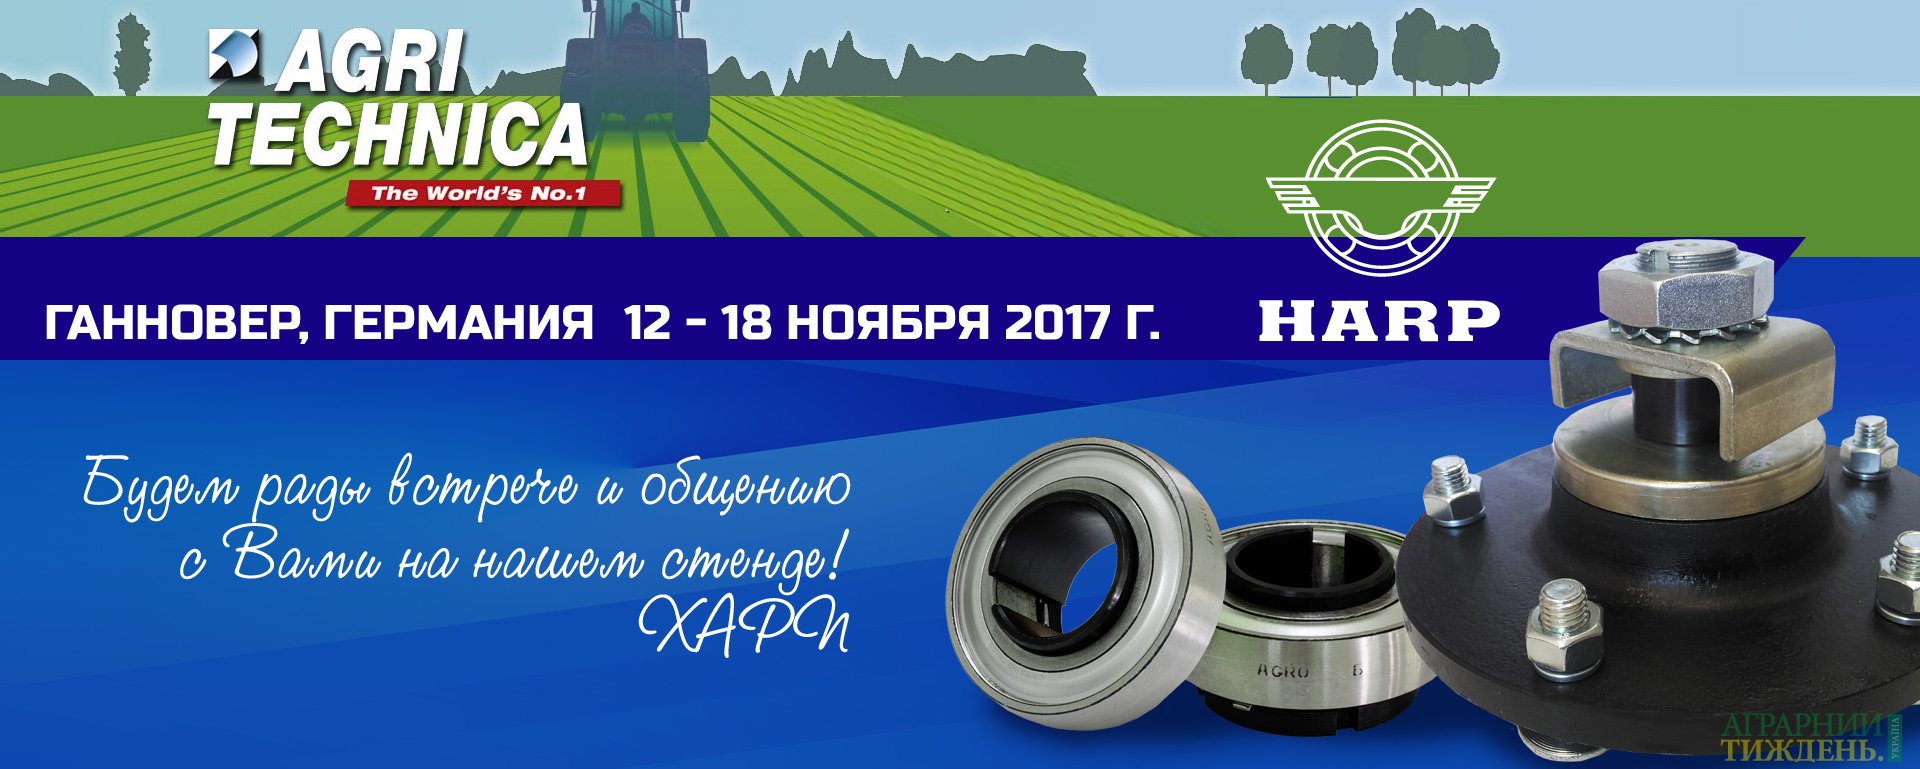 ХАРП представит украинского производителя на мировом рынке